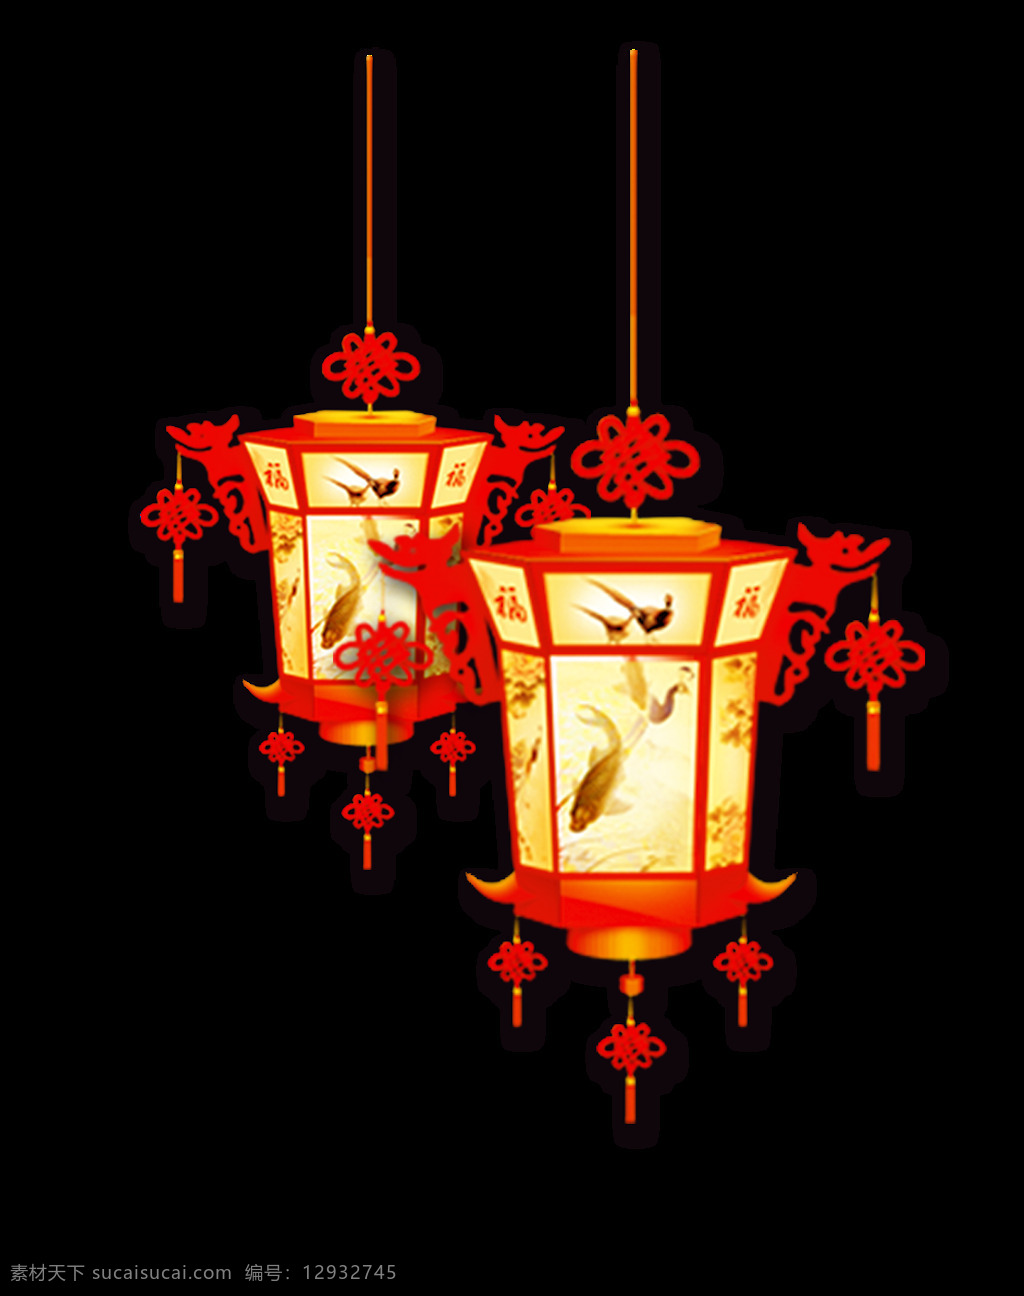 鲜艳 彩色 灯笼 节日 元素 黄色灯笼 节日元素 中国风元素 中国结